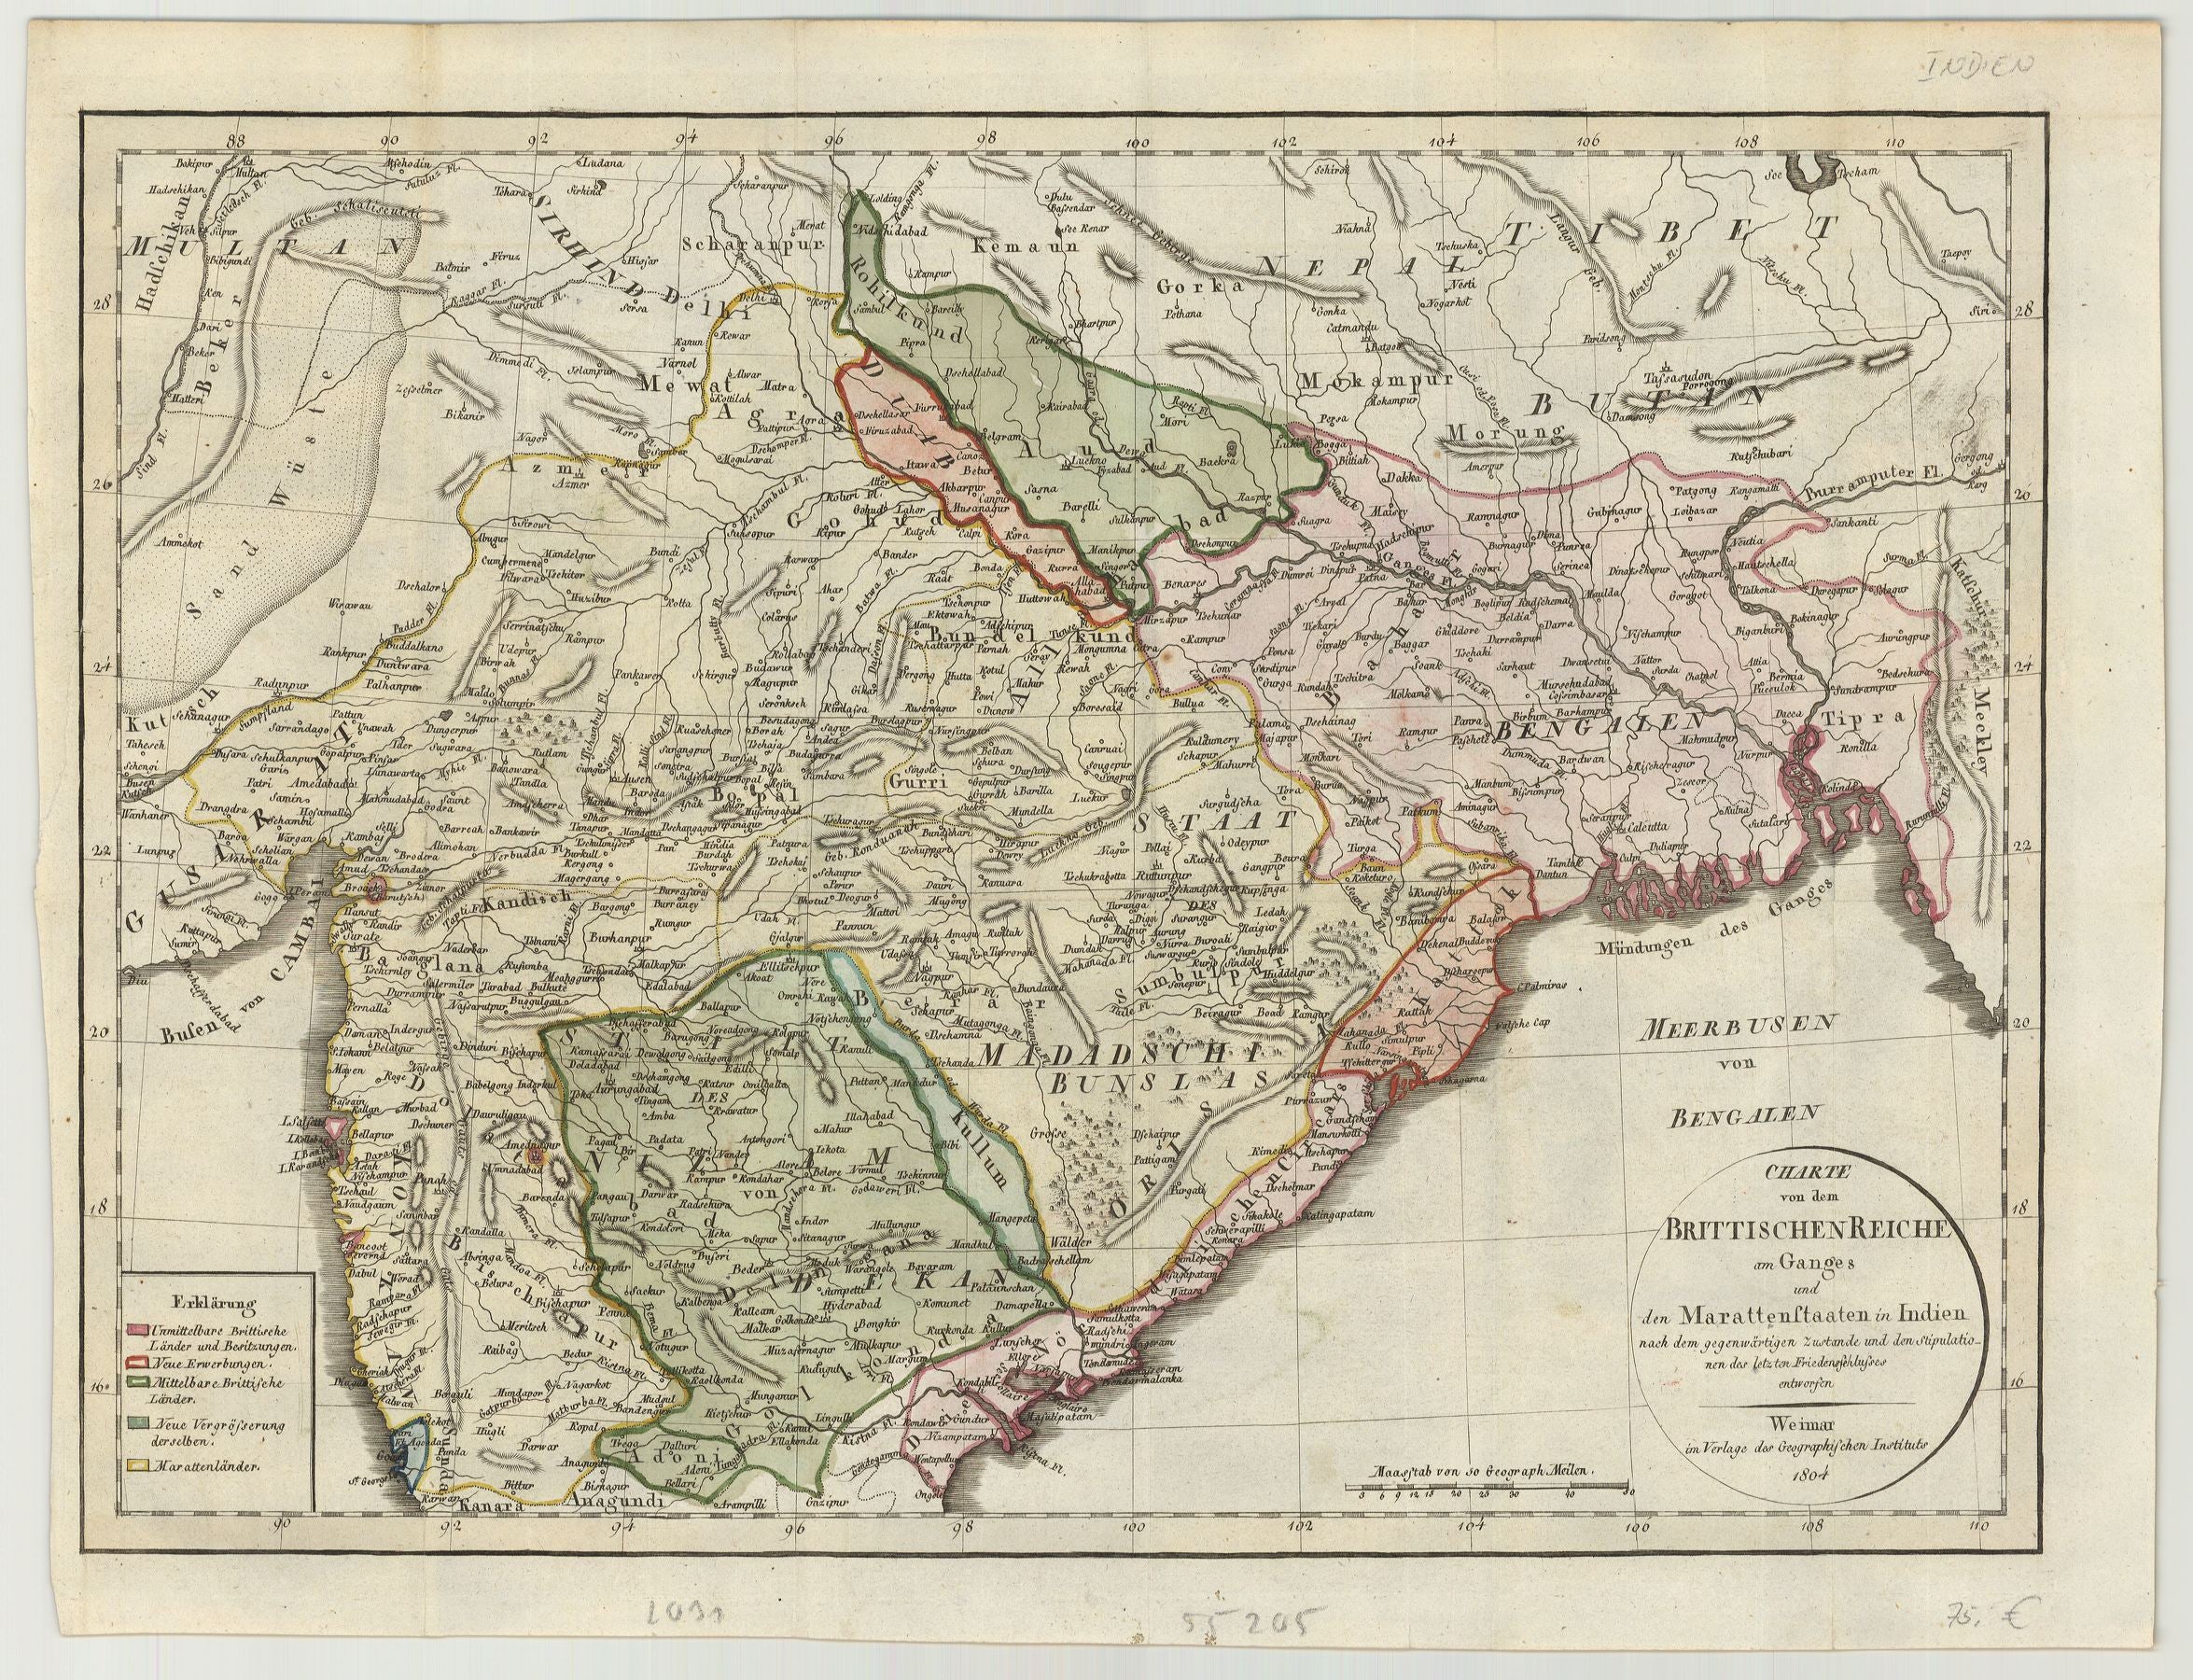 Nordindien im Jahr 1804 vom Verlag des Geographisches Instituts Weimar